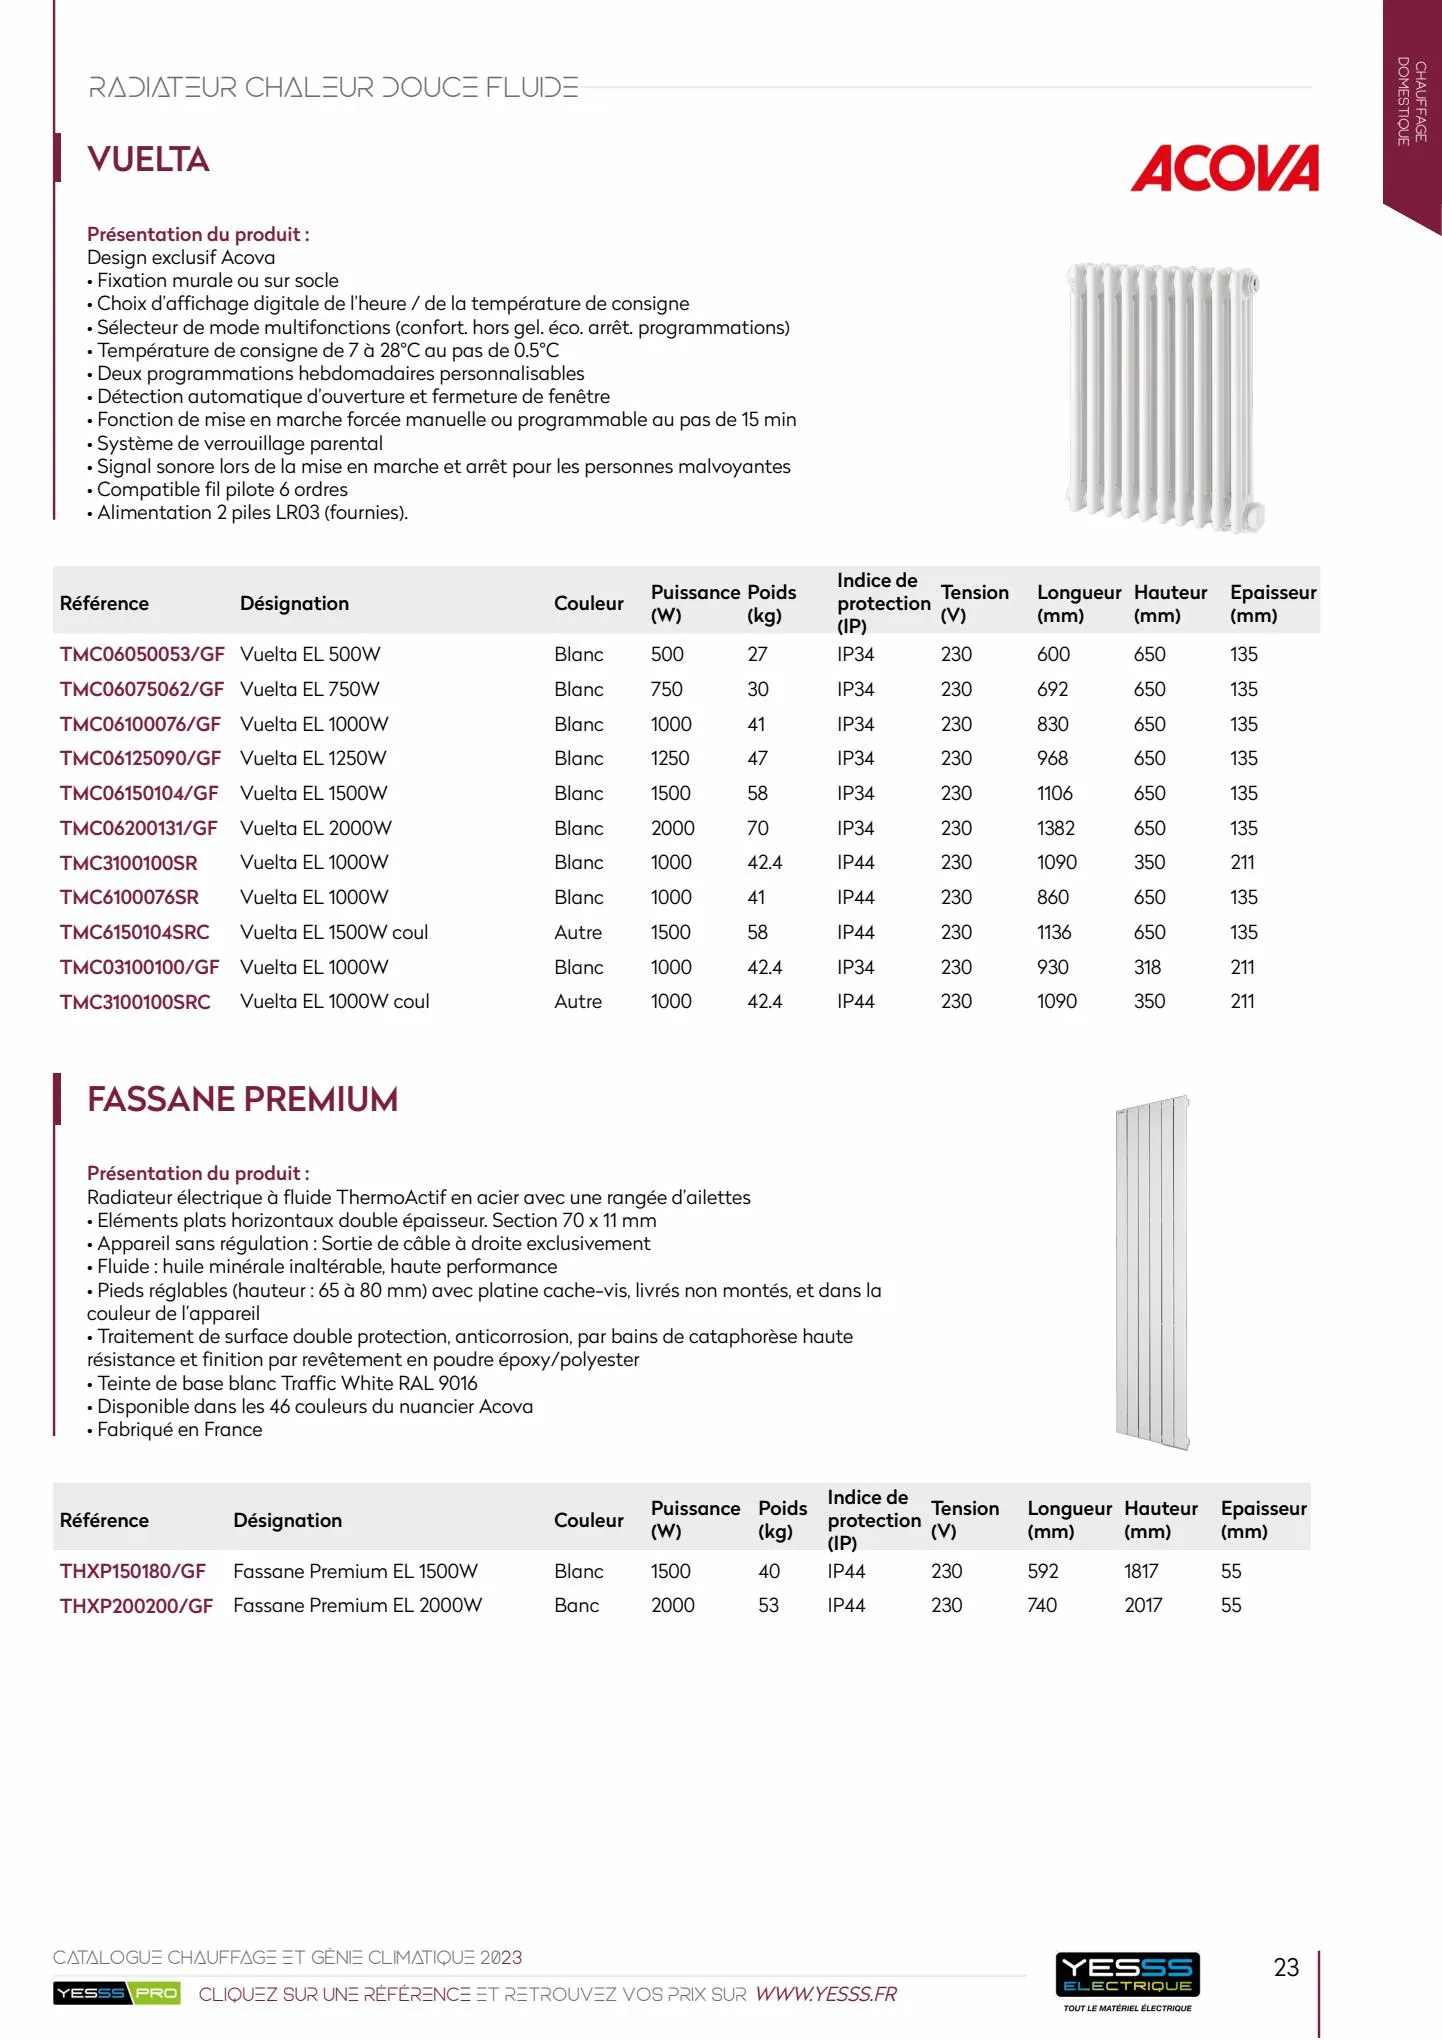 Catalogue Catalogue chauffage et génie climatique, page 00024